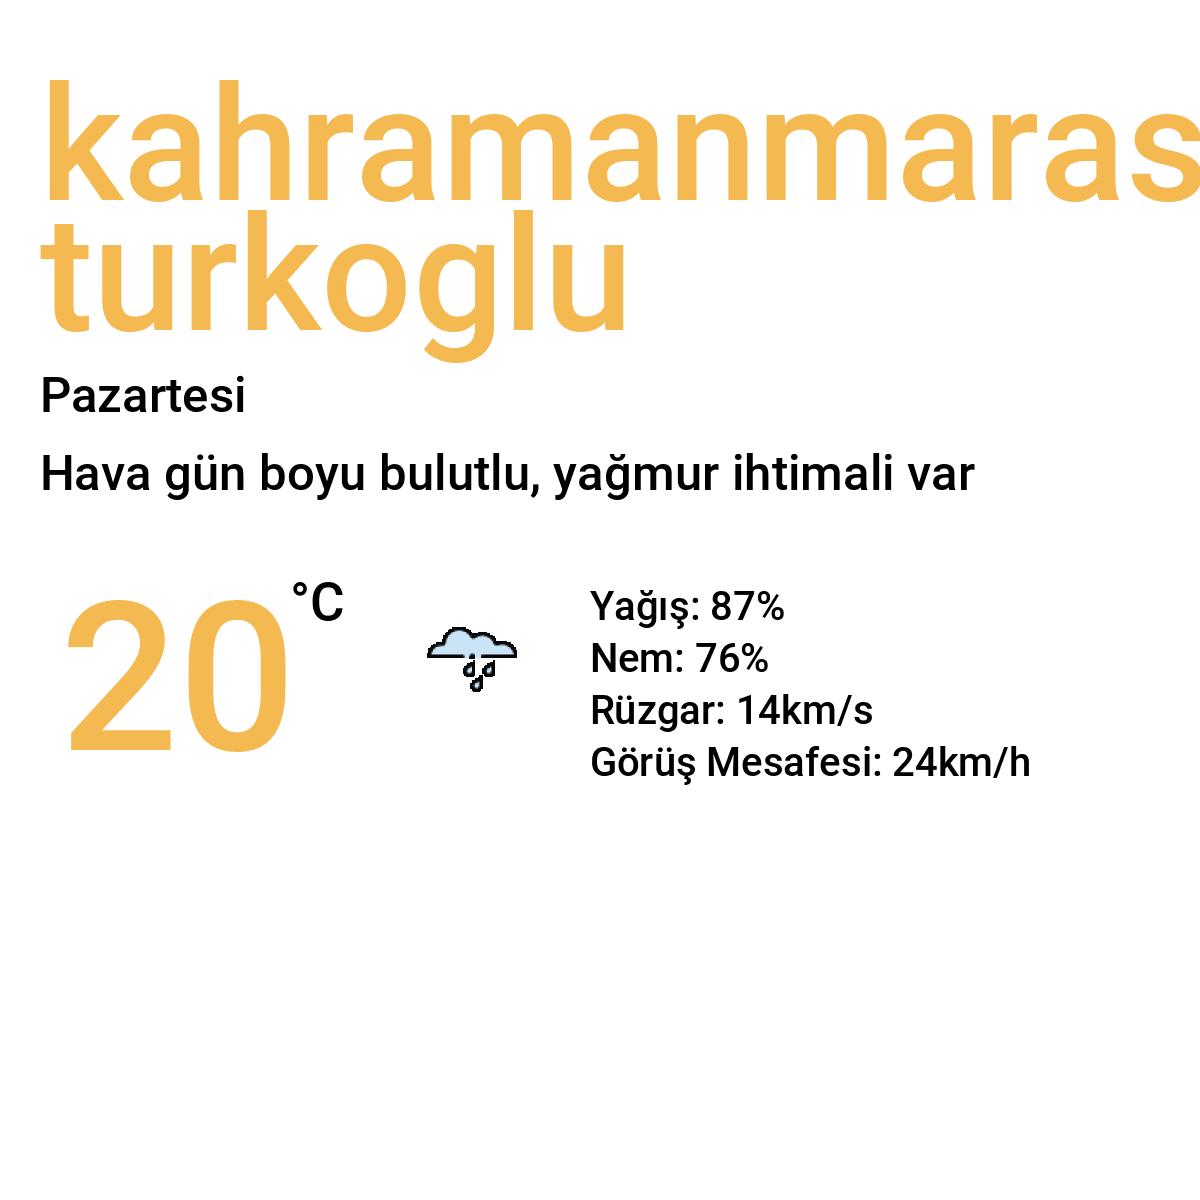 Kahramanmaraş Türkoğlu Yarınki Hava Durumu Tahmini